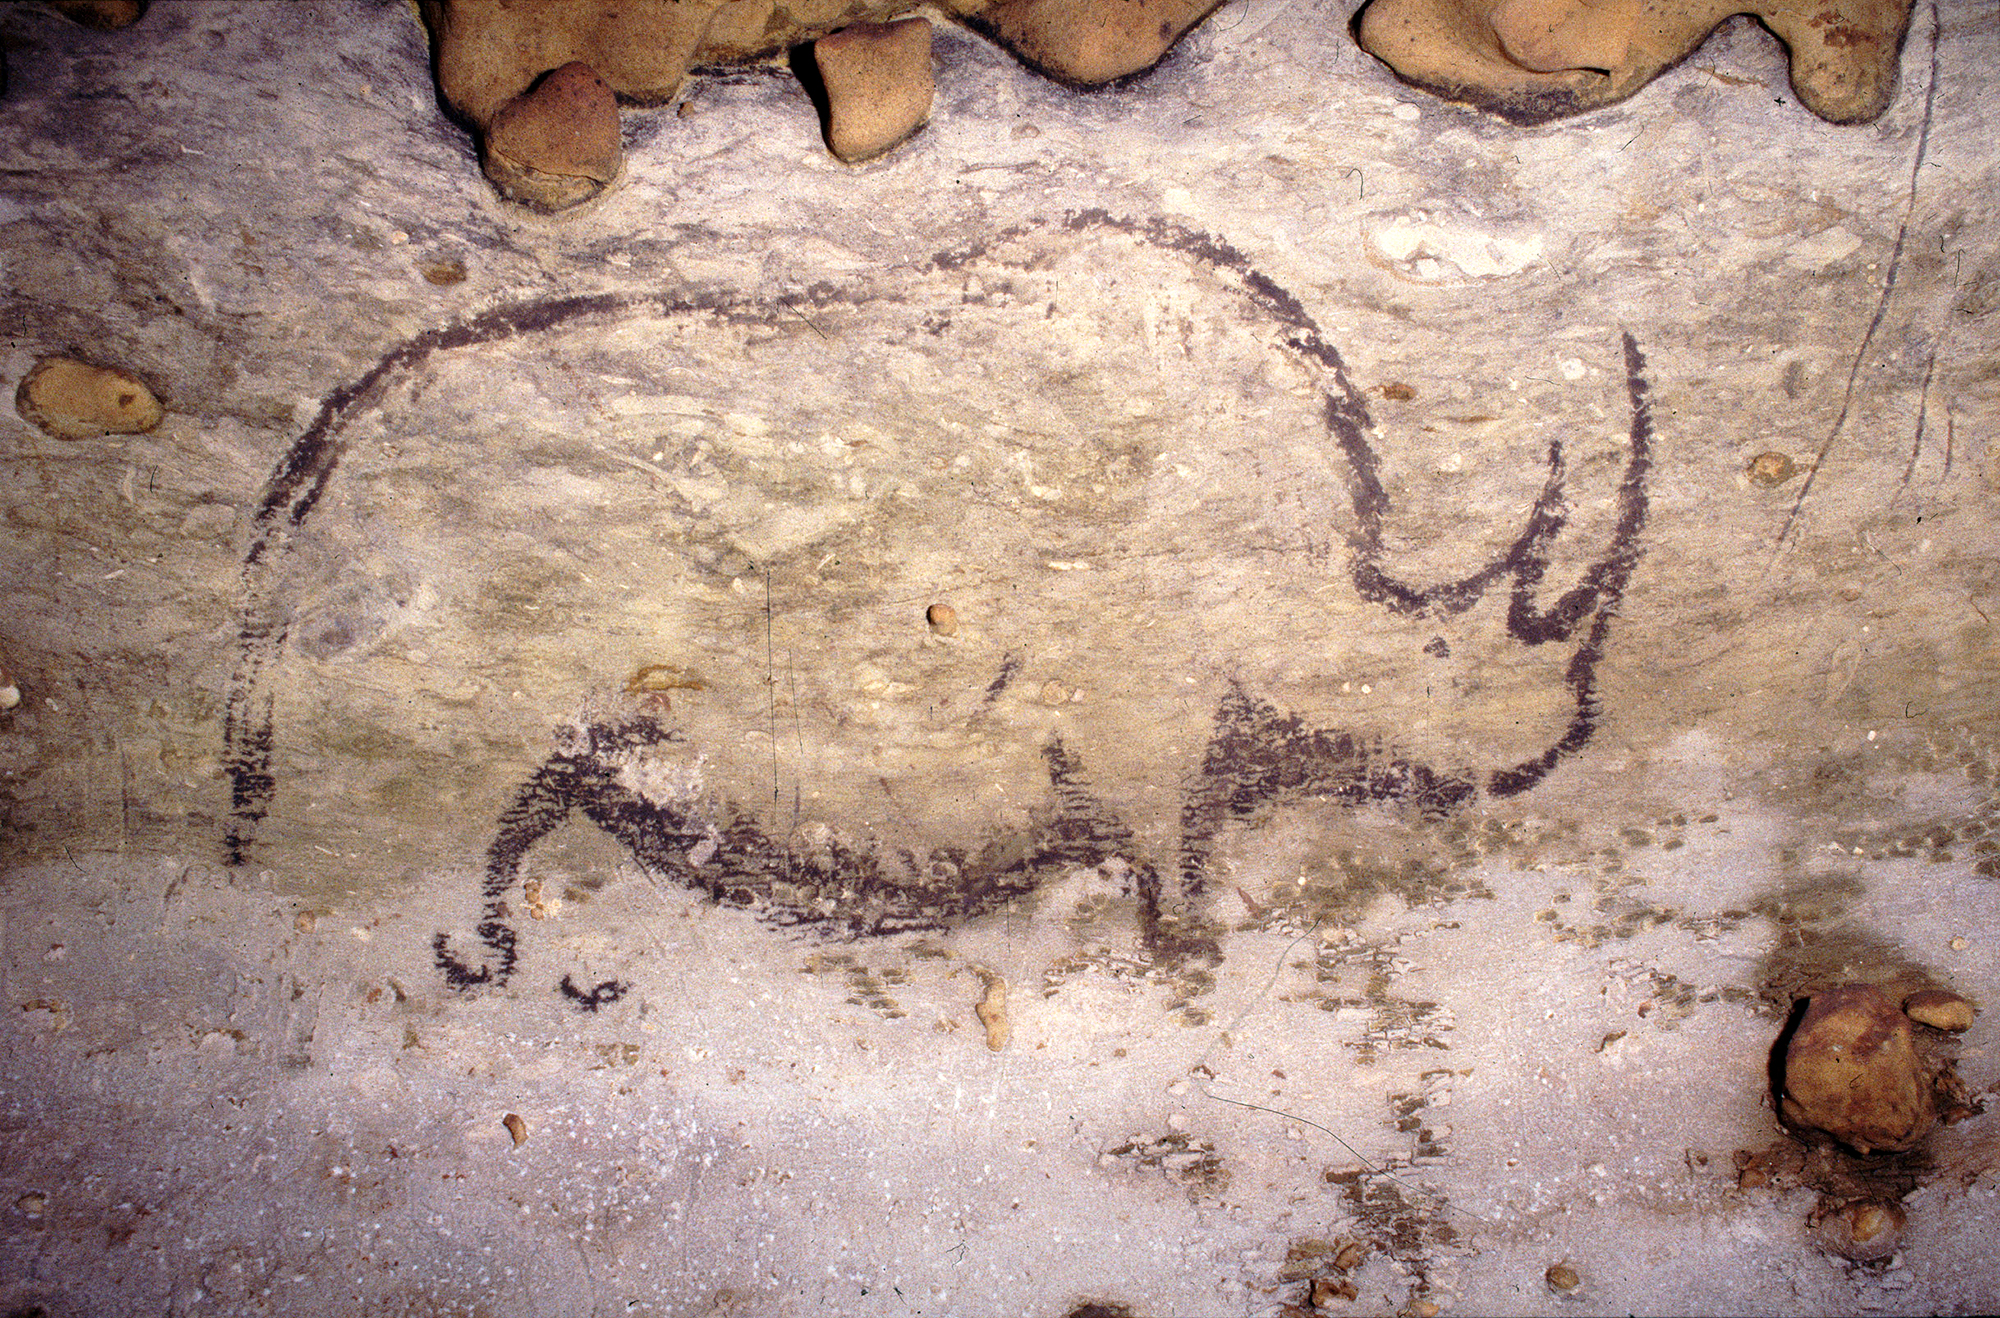 Rhino from the Rouffignac Cave